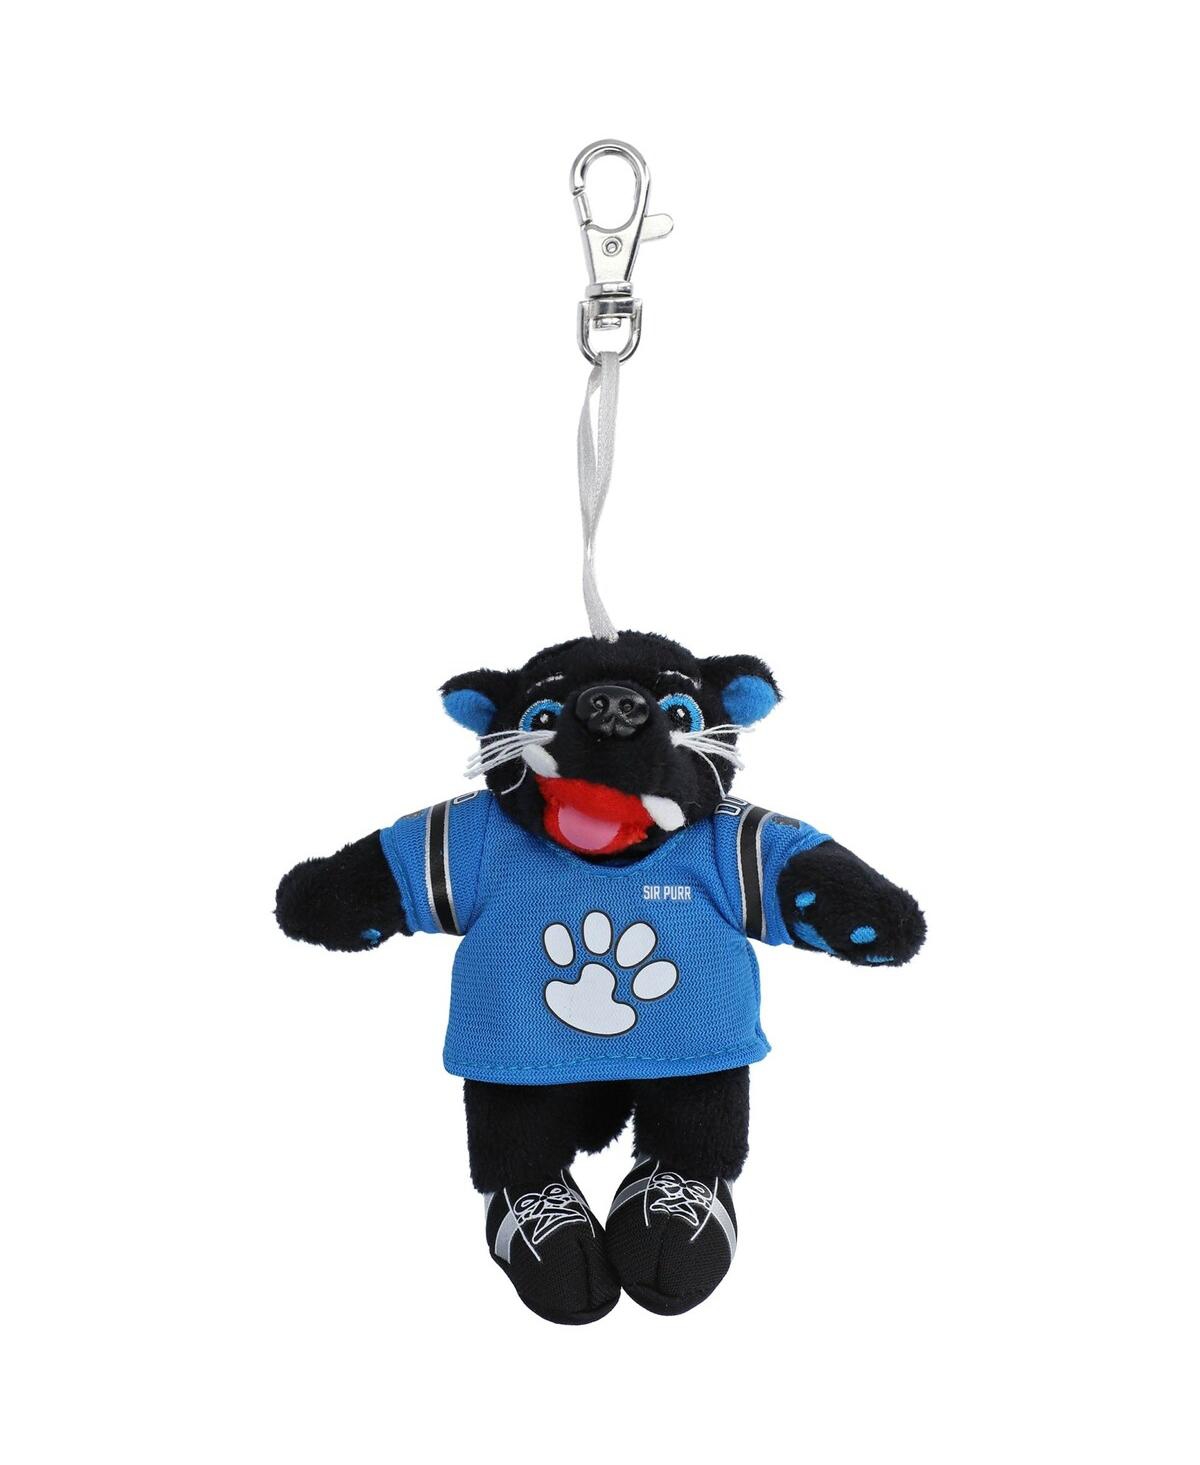 Carolina Panthers Mini Mascot Keychain - Multi